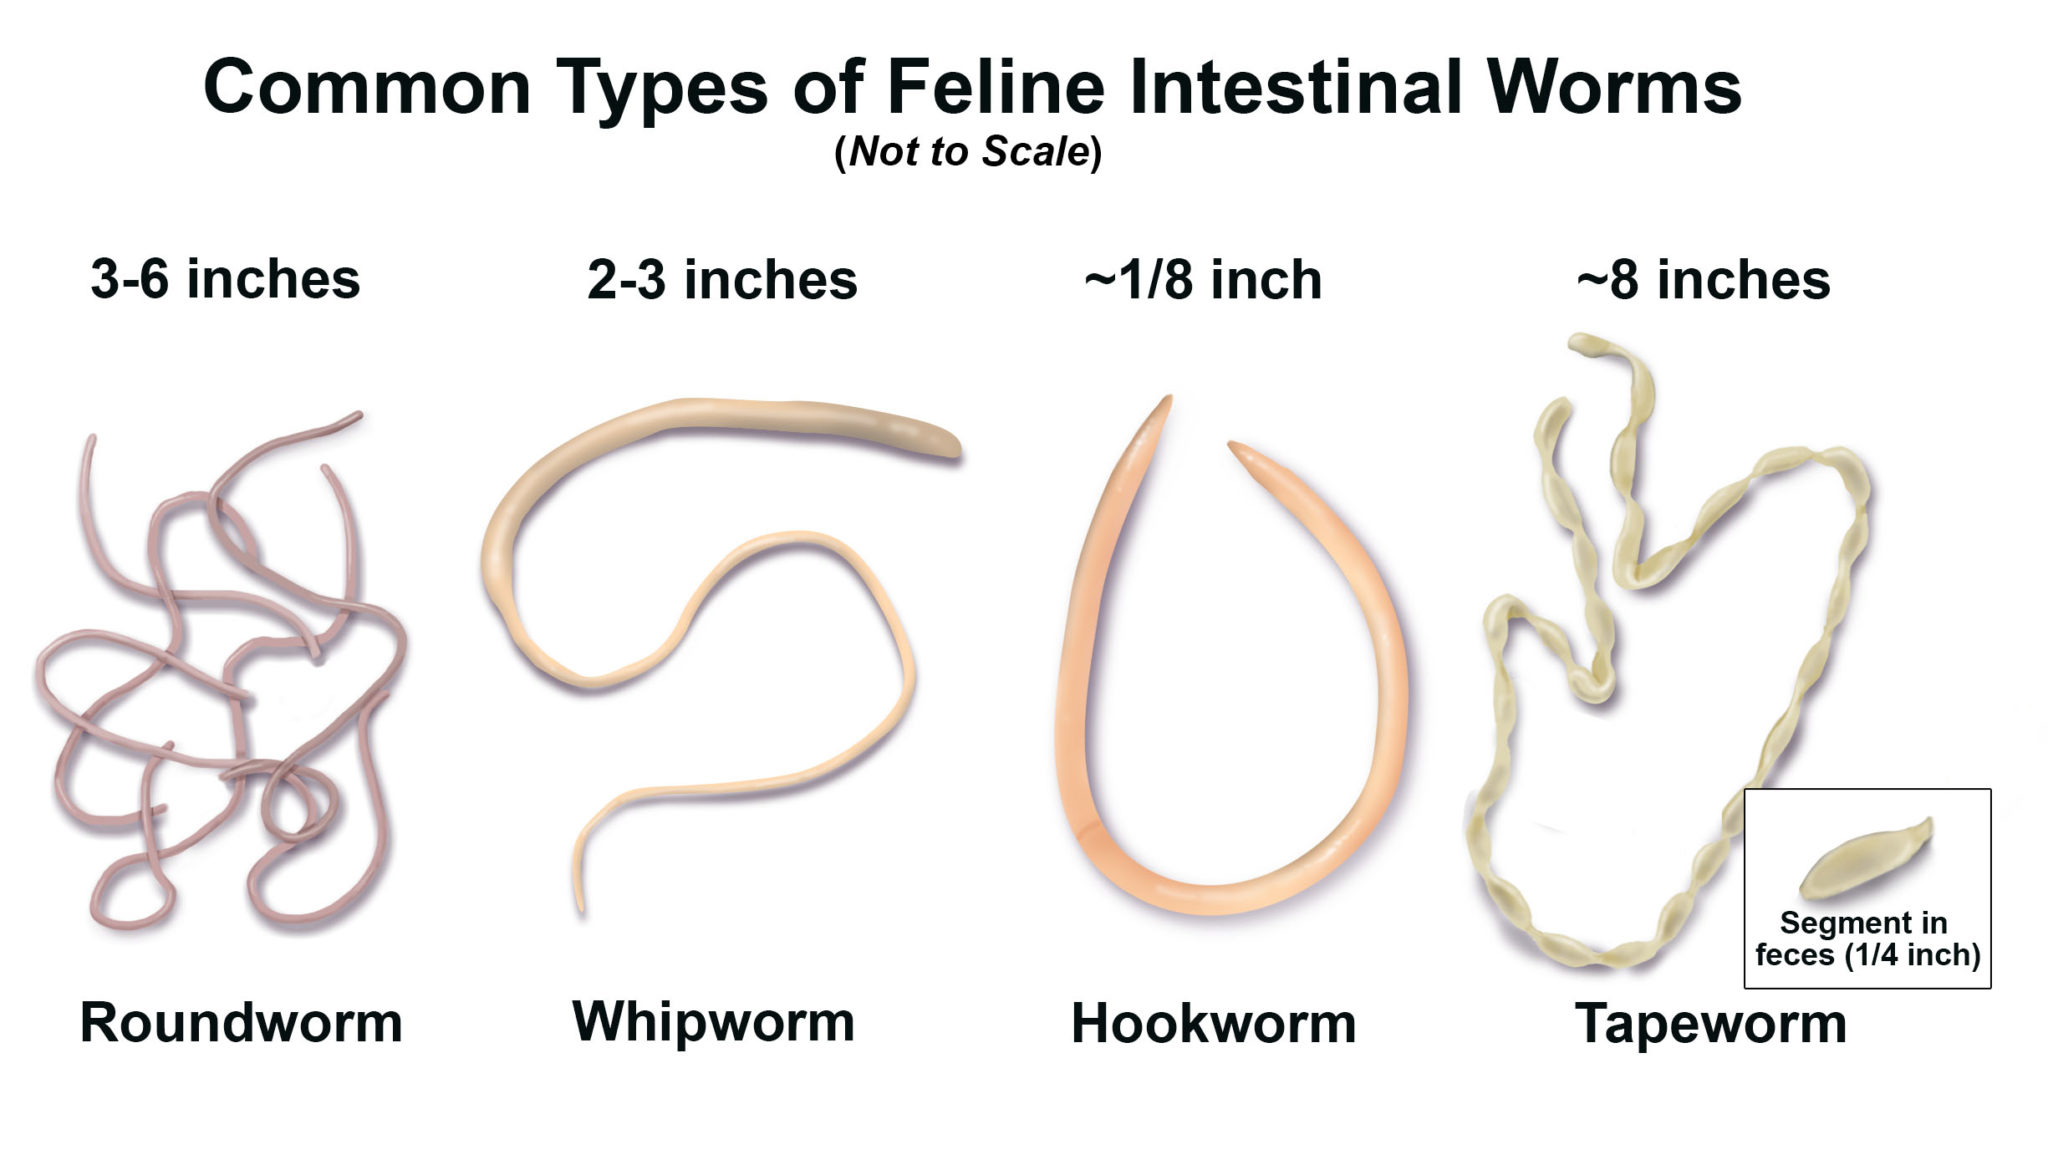 tapeworm segments in human stool